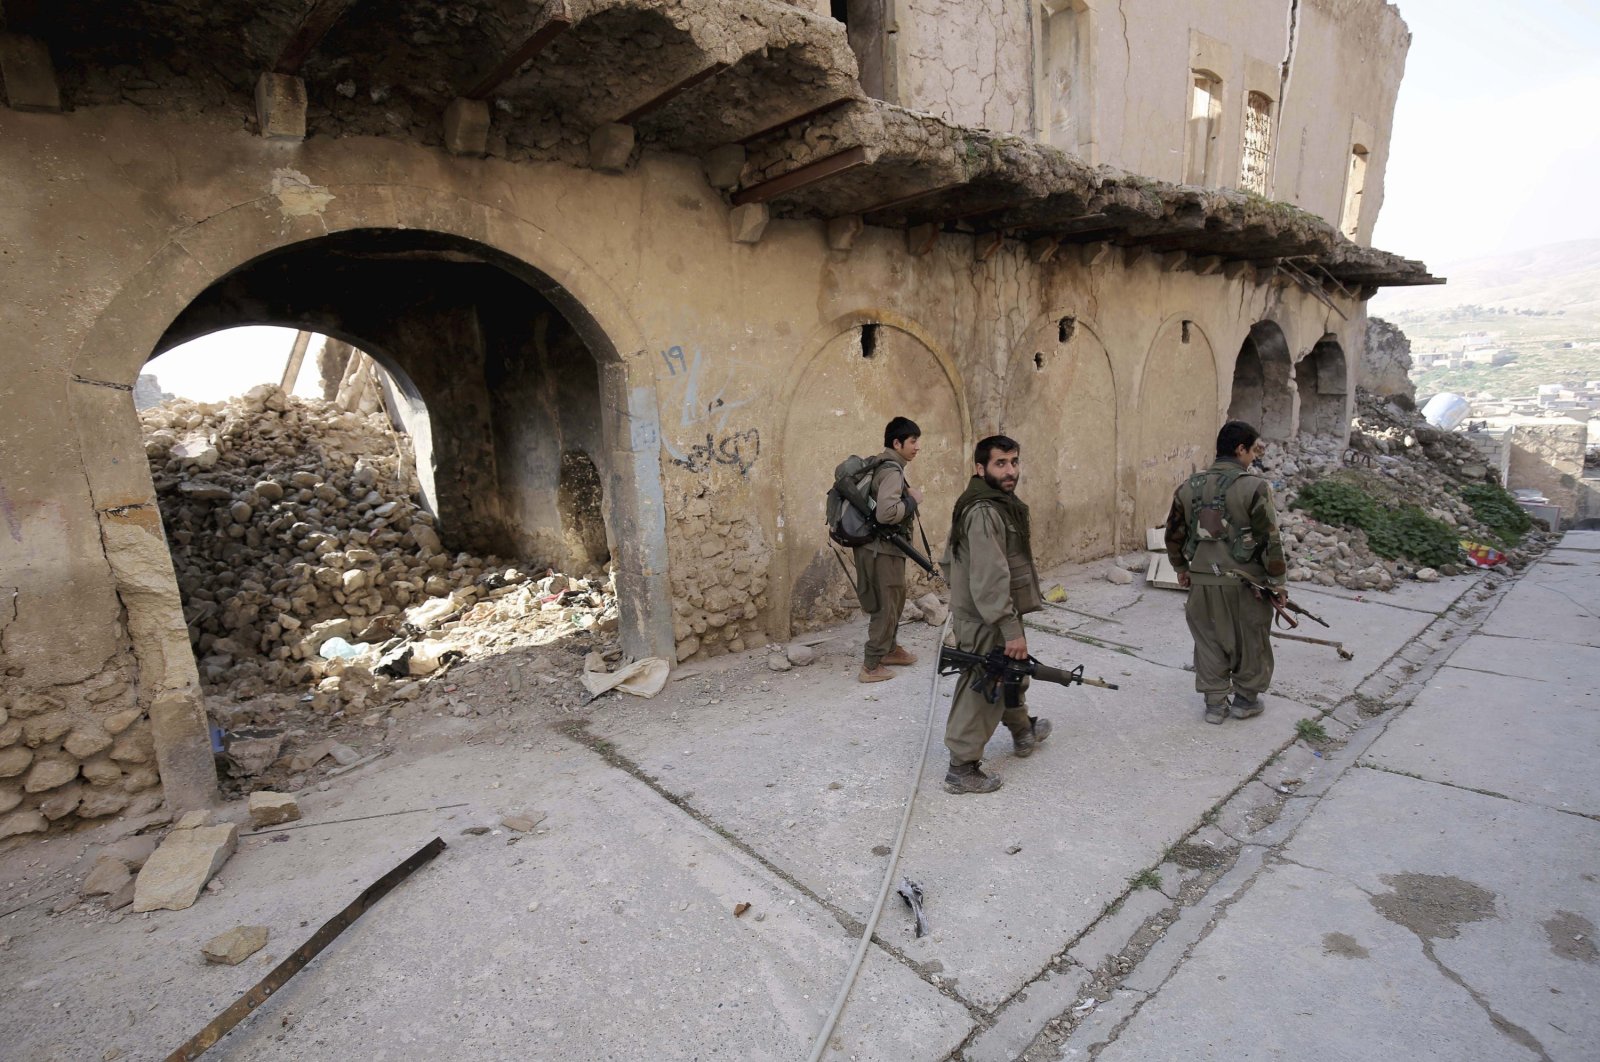 PKK terrorists walk in the damaged streets of Sinjar, Iraq, Jan. 29, 2015. (AP Photo)